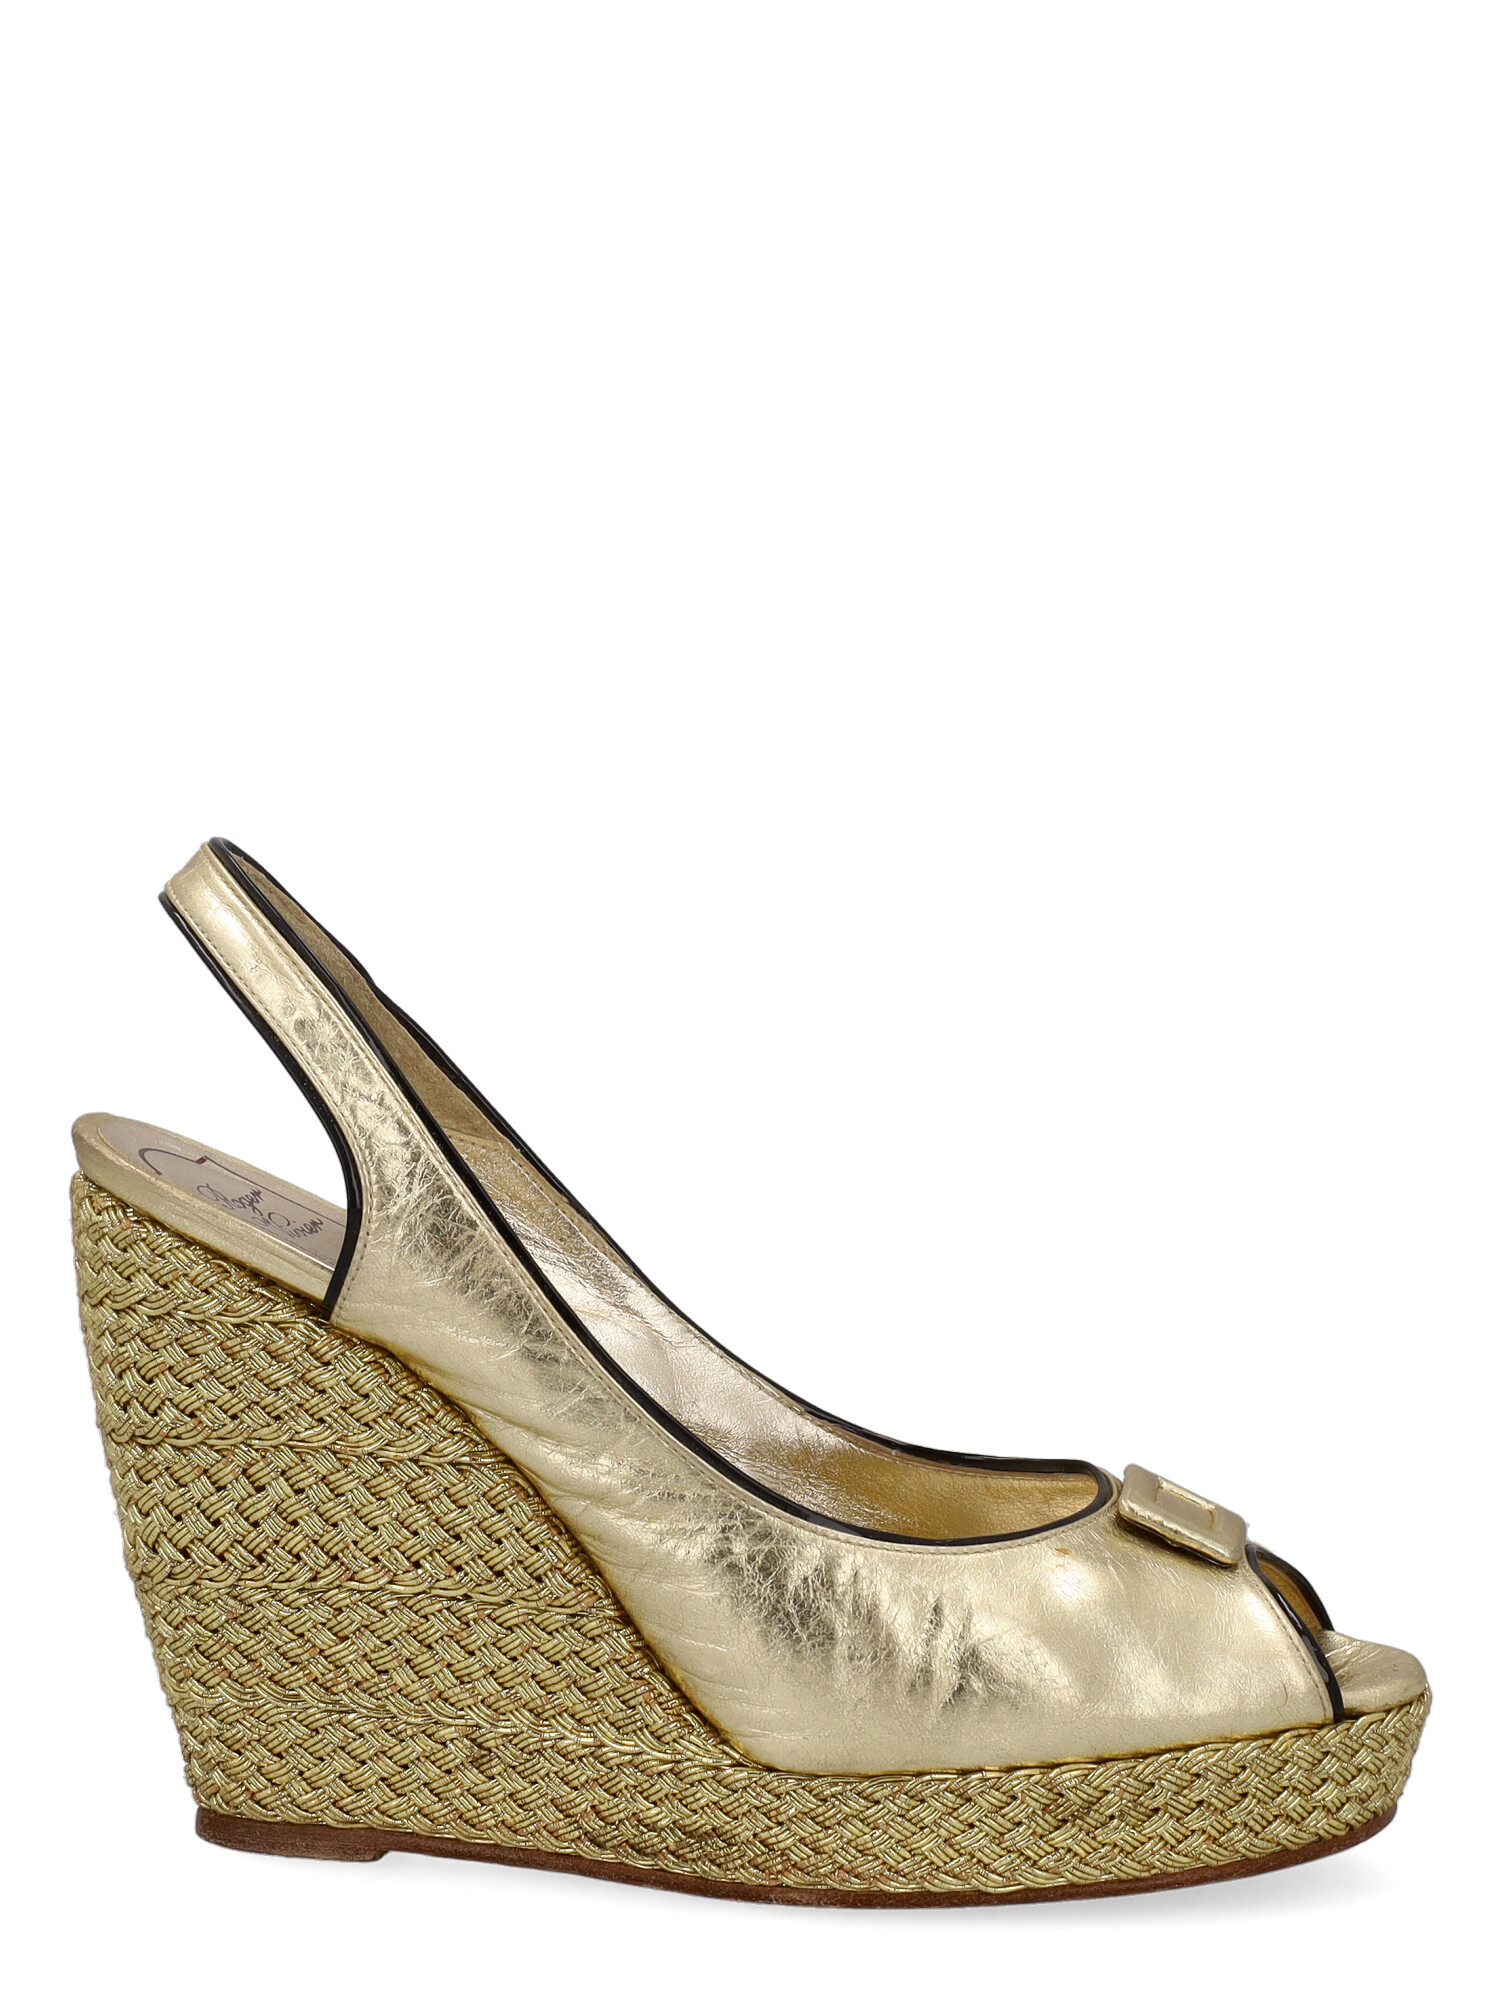 Roger Vivier Femme Chaussures à semelle compensée Gold Leather